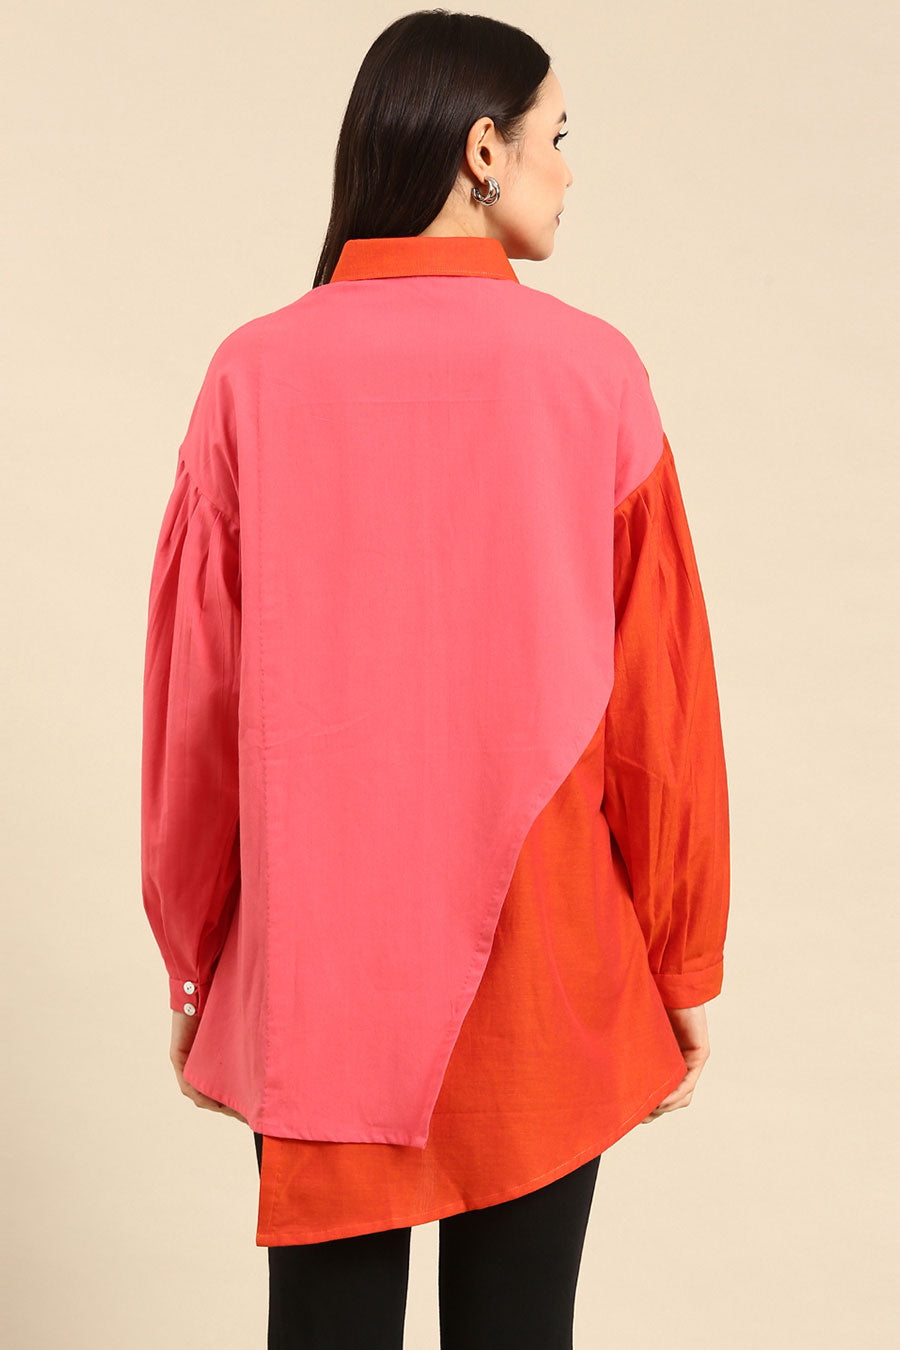 Orange & Pink Cotton High-Low Shirt